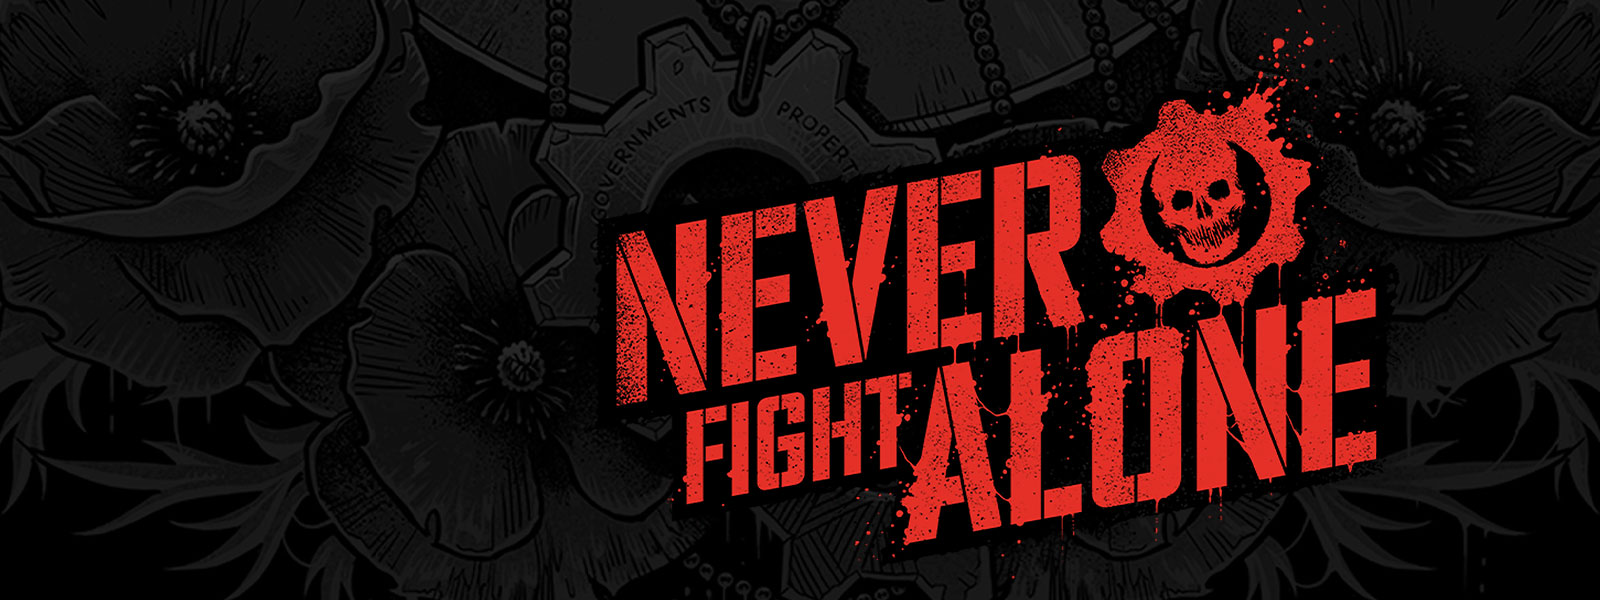 顯示 never fight alone 字樣的背景影像